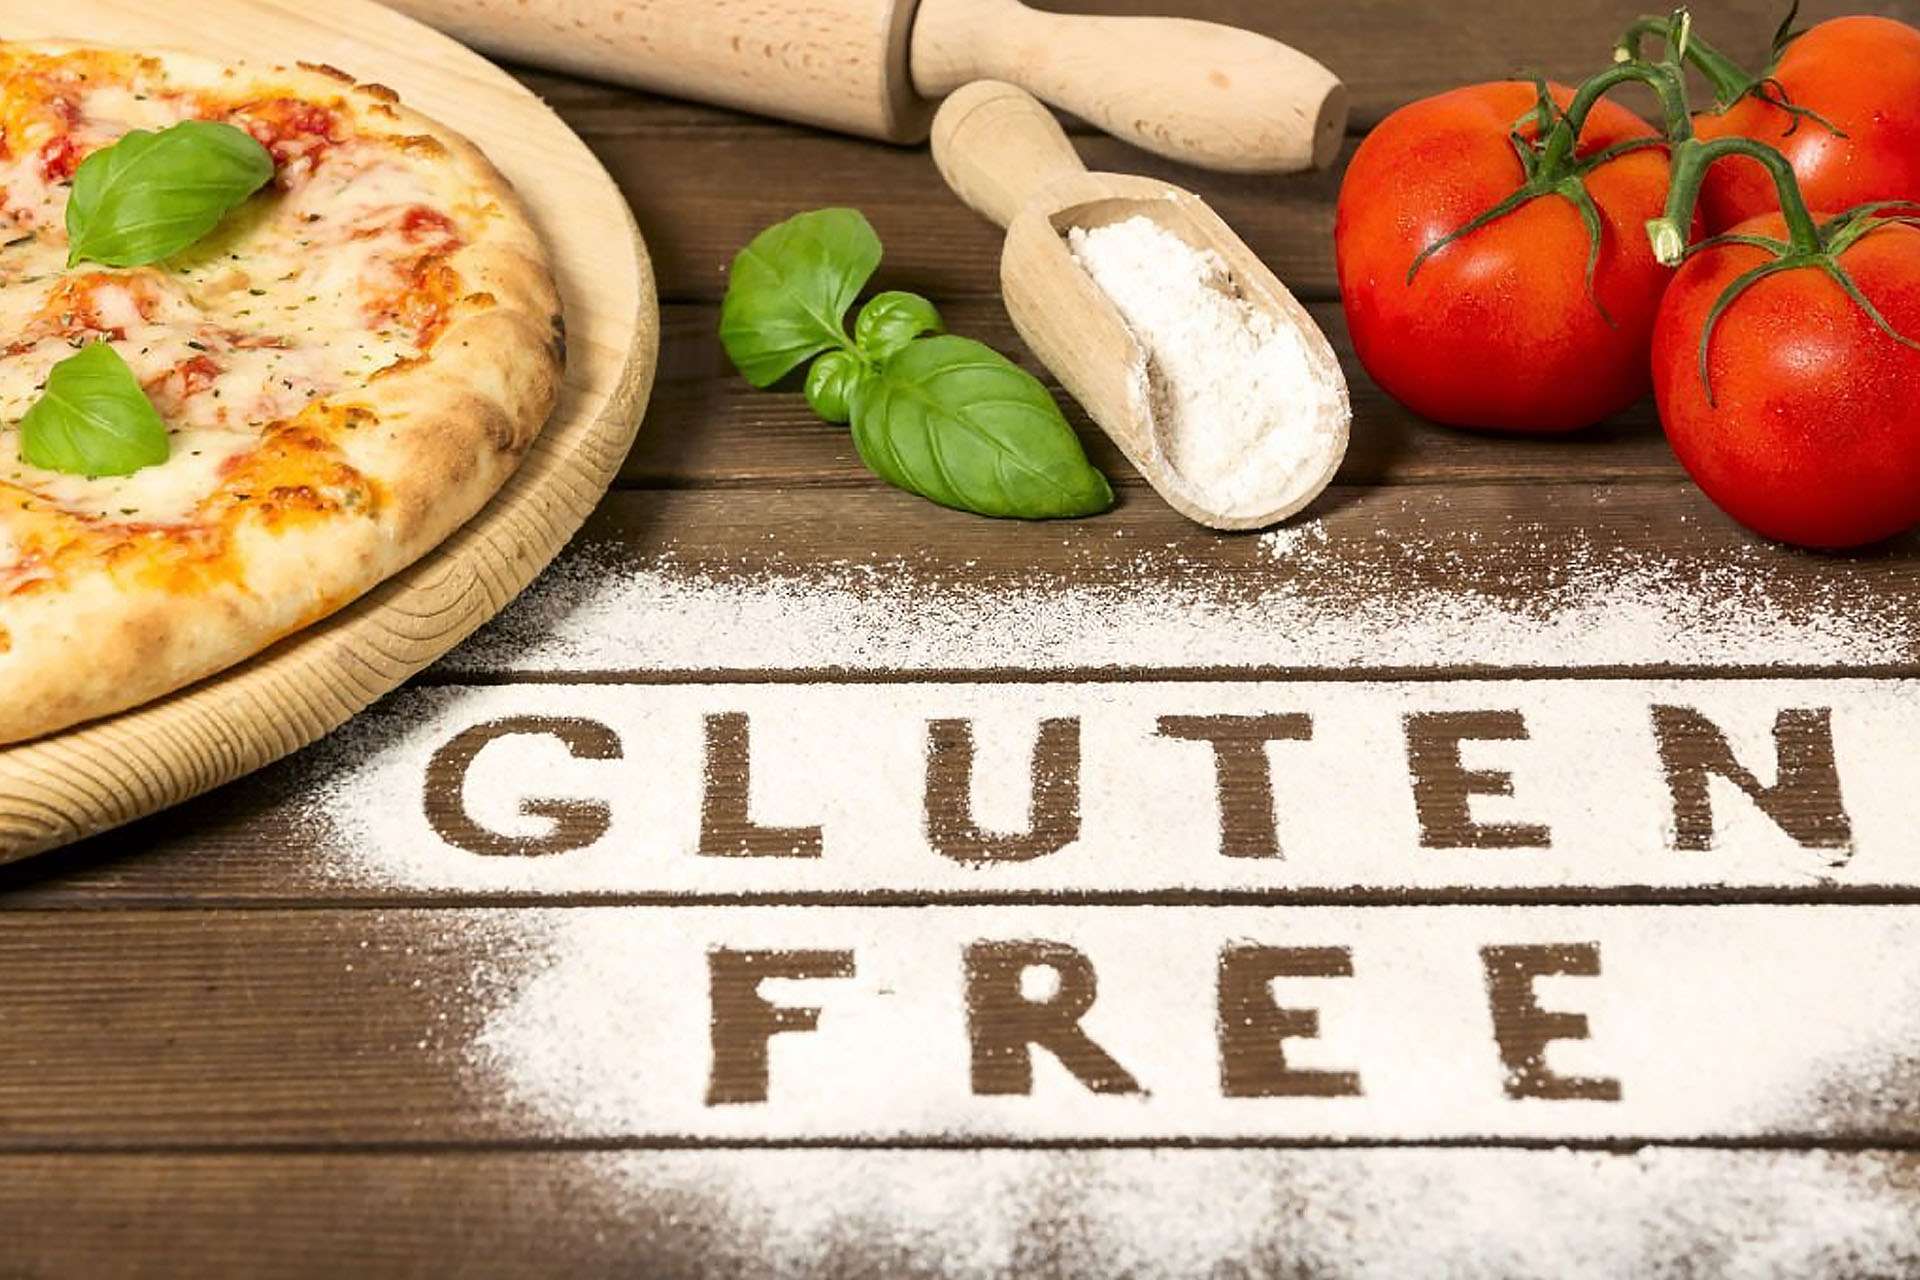 Postoji široko rasprostranjena ideja da je hrana bez glutena zdravija, ali to nije tačno